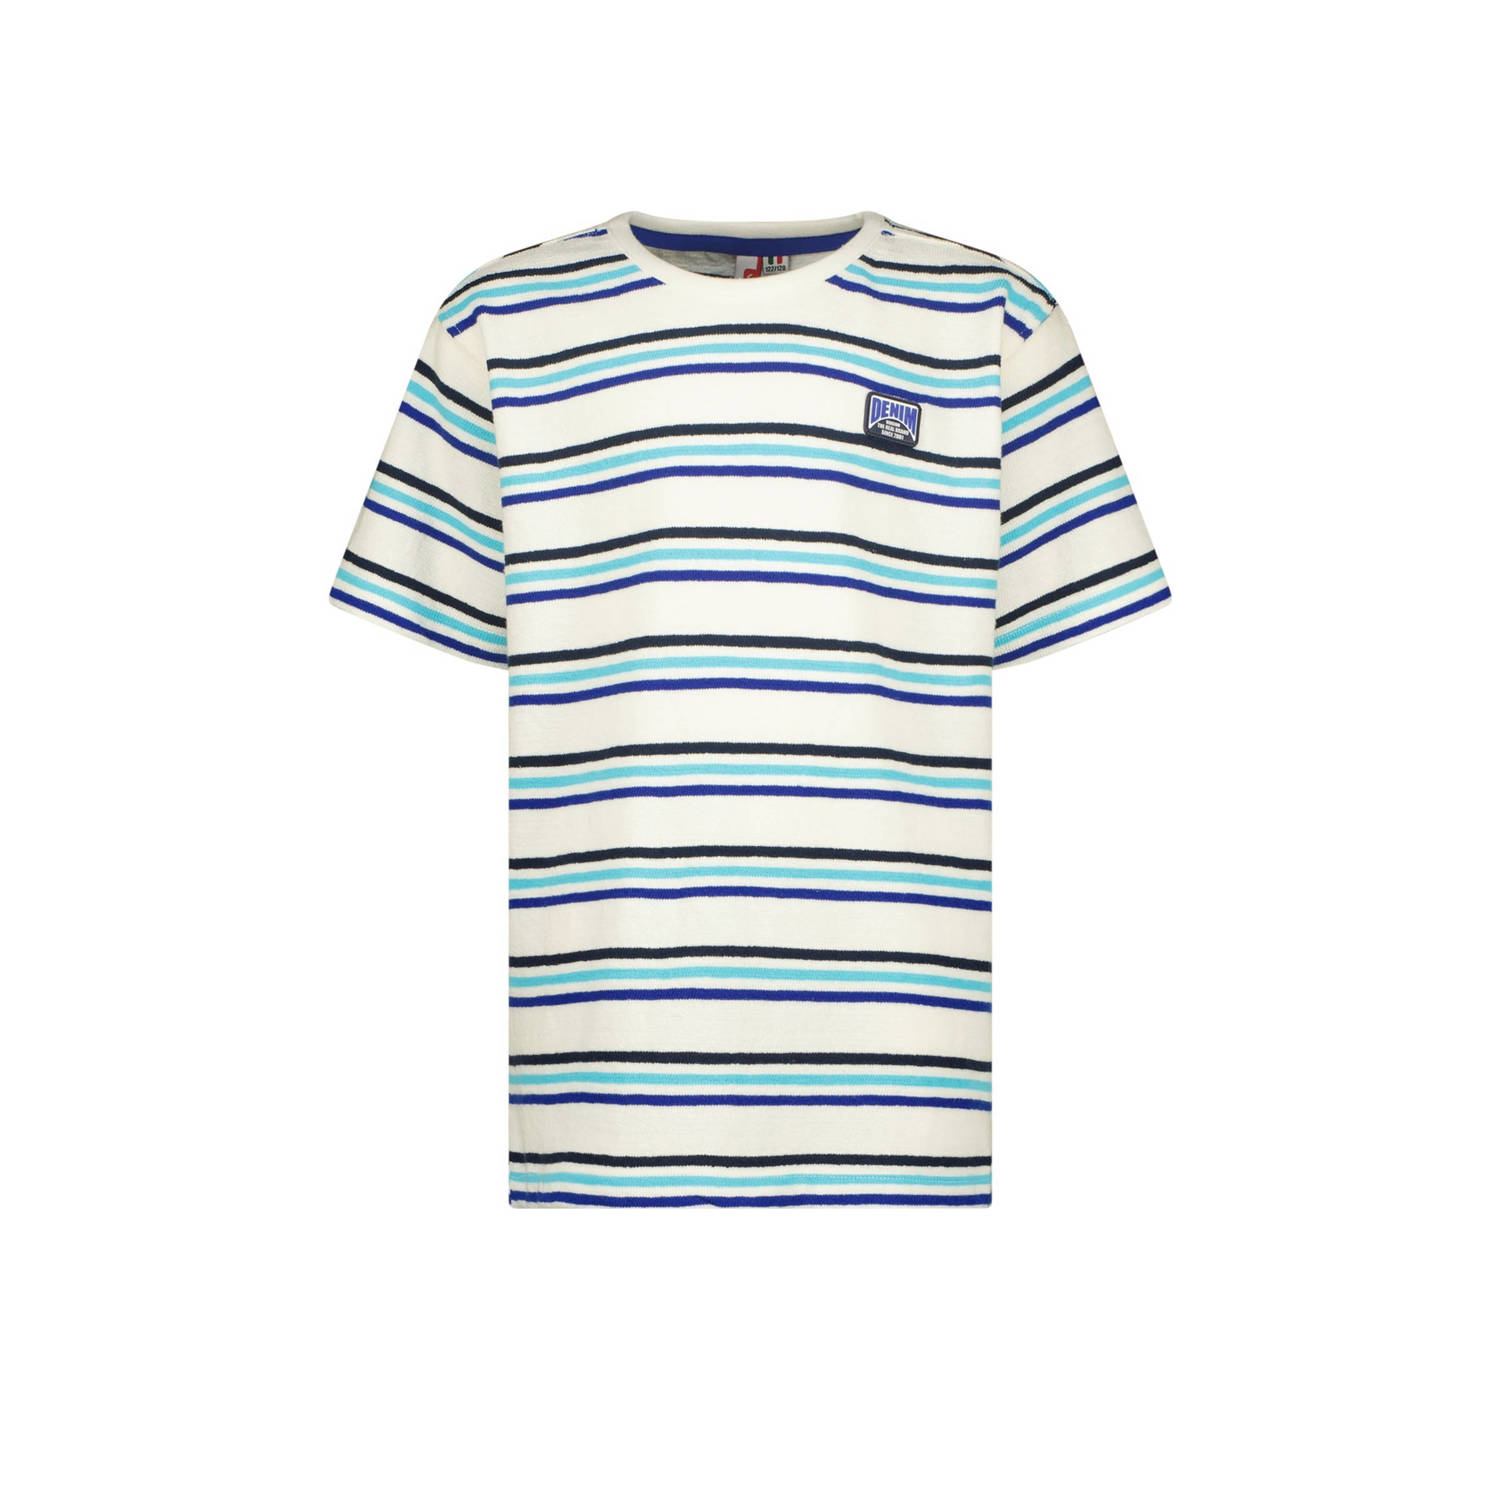 Vingino gestreept T-shirt Hoss wit lichtblauw